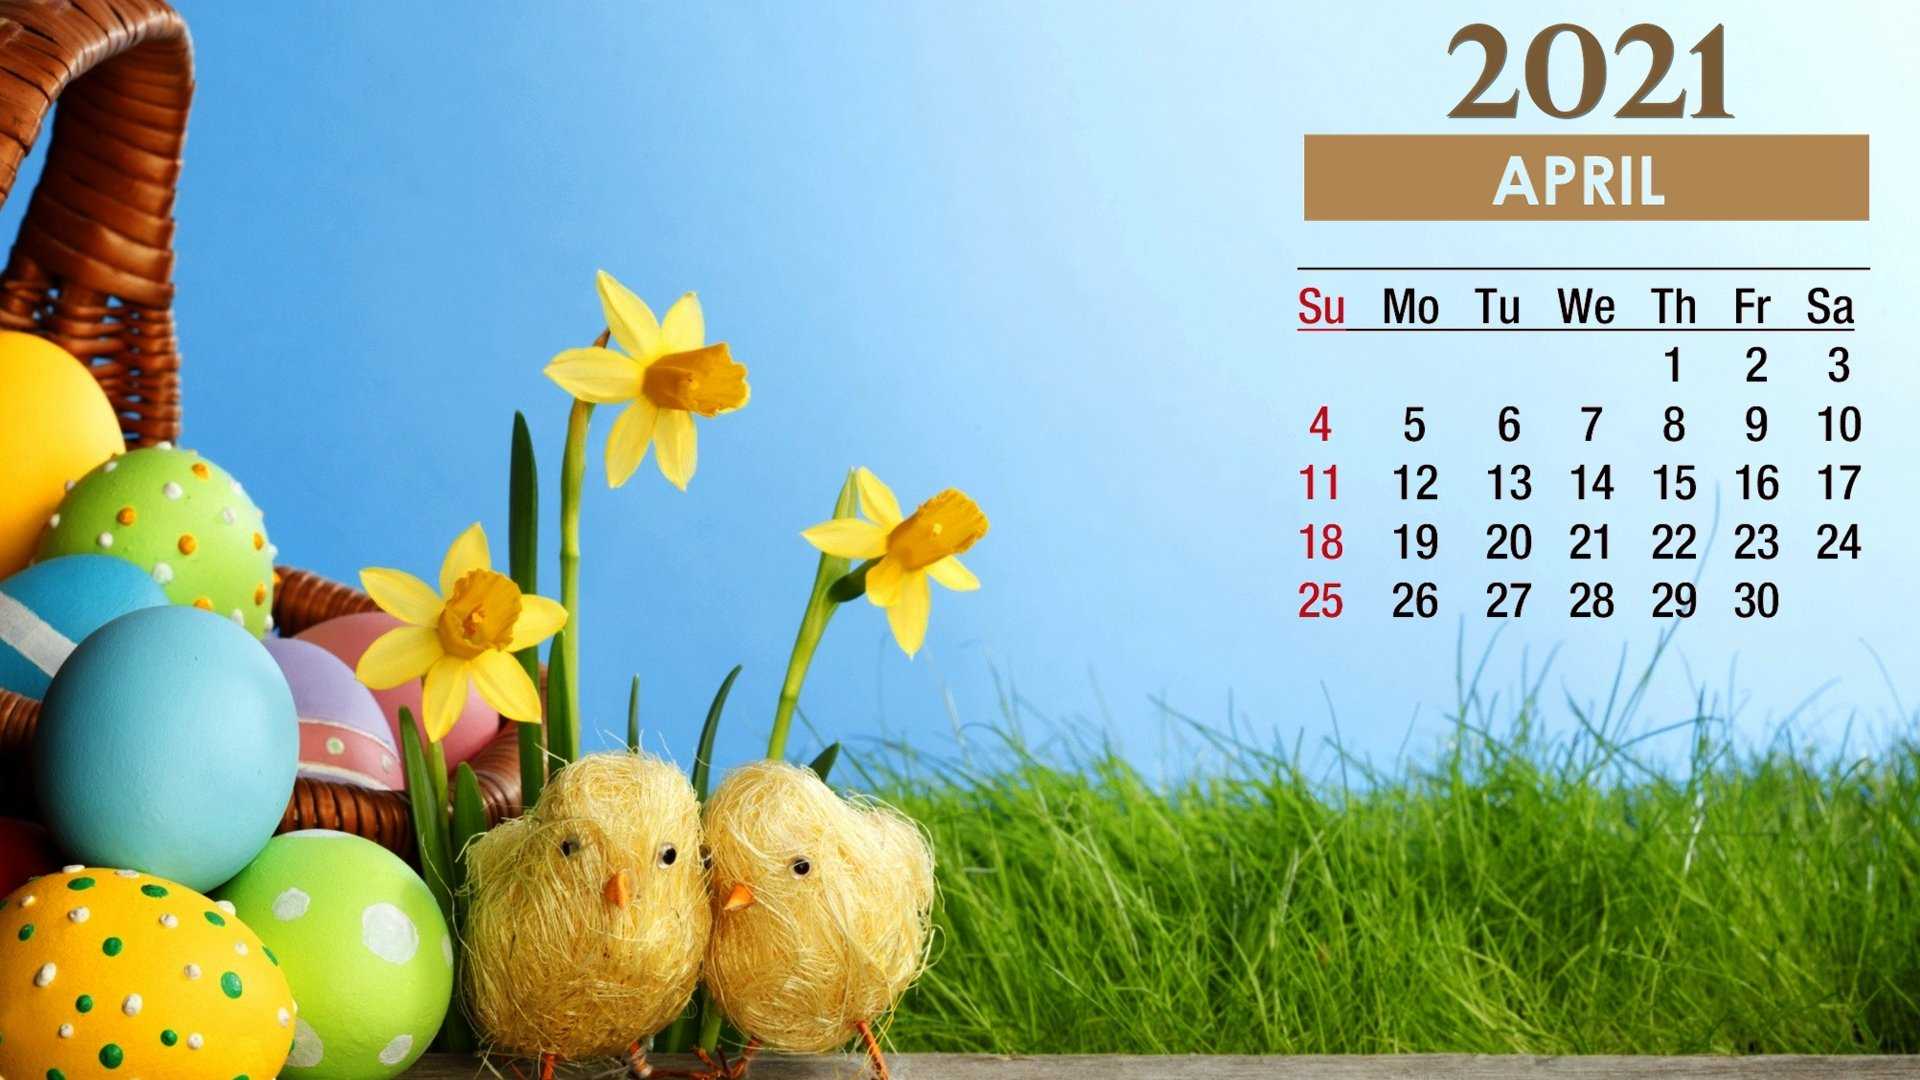 Easter 2021 April Calendar Wallpaper .kolpaper.com